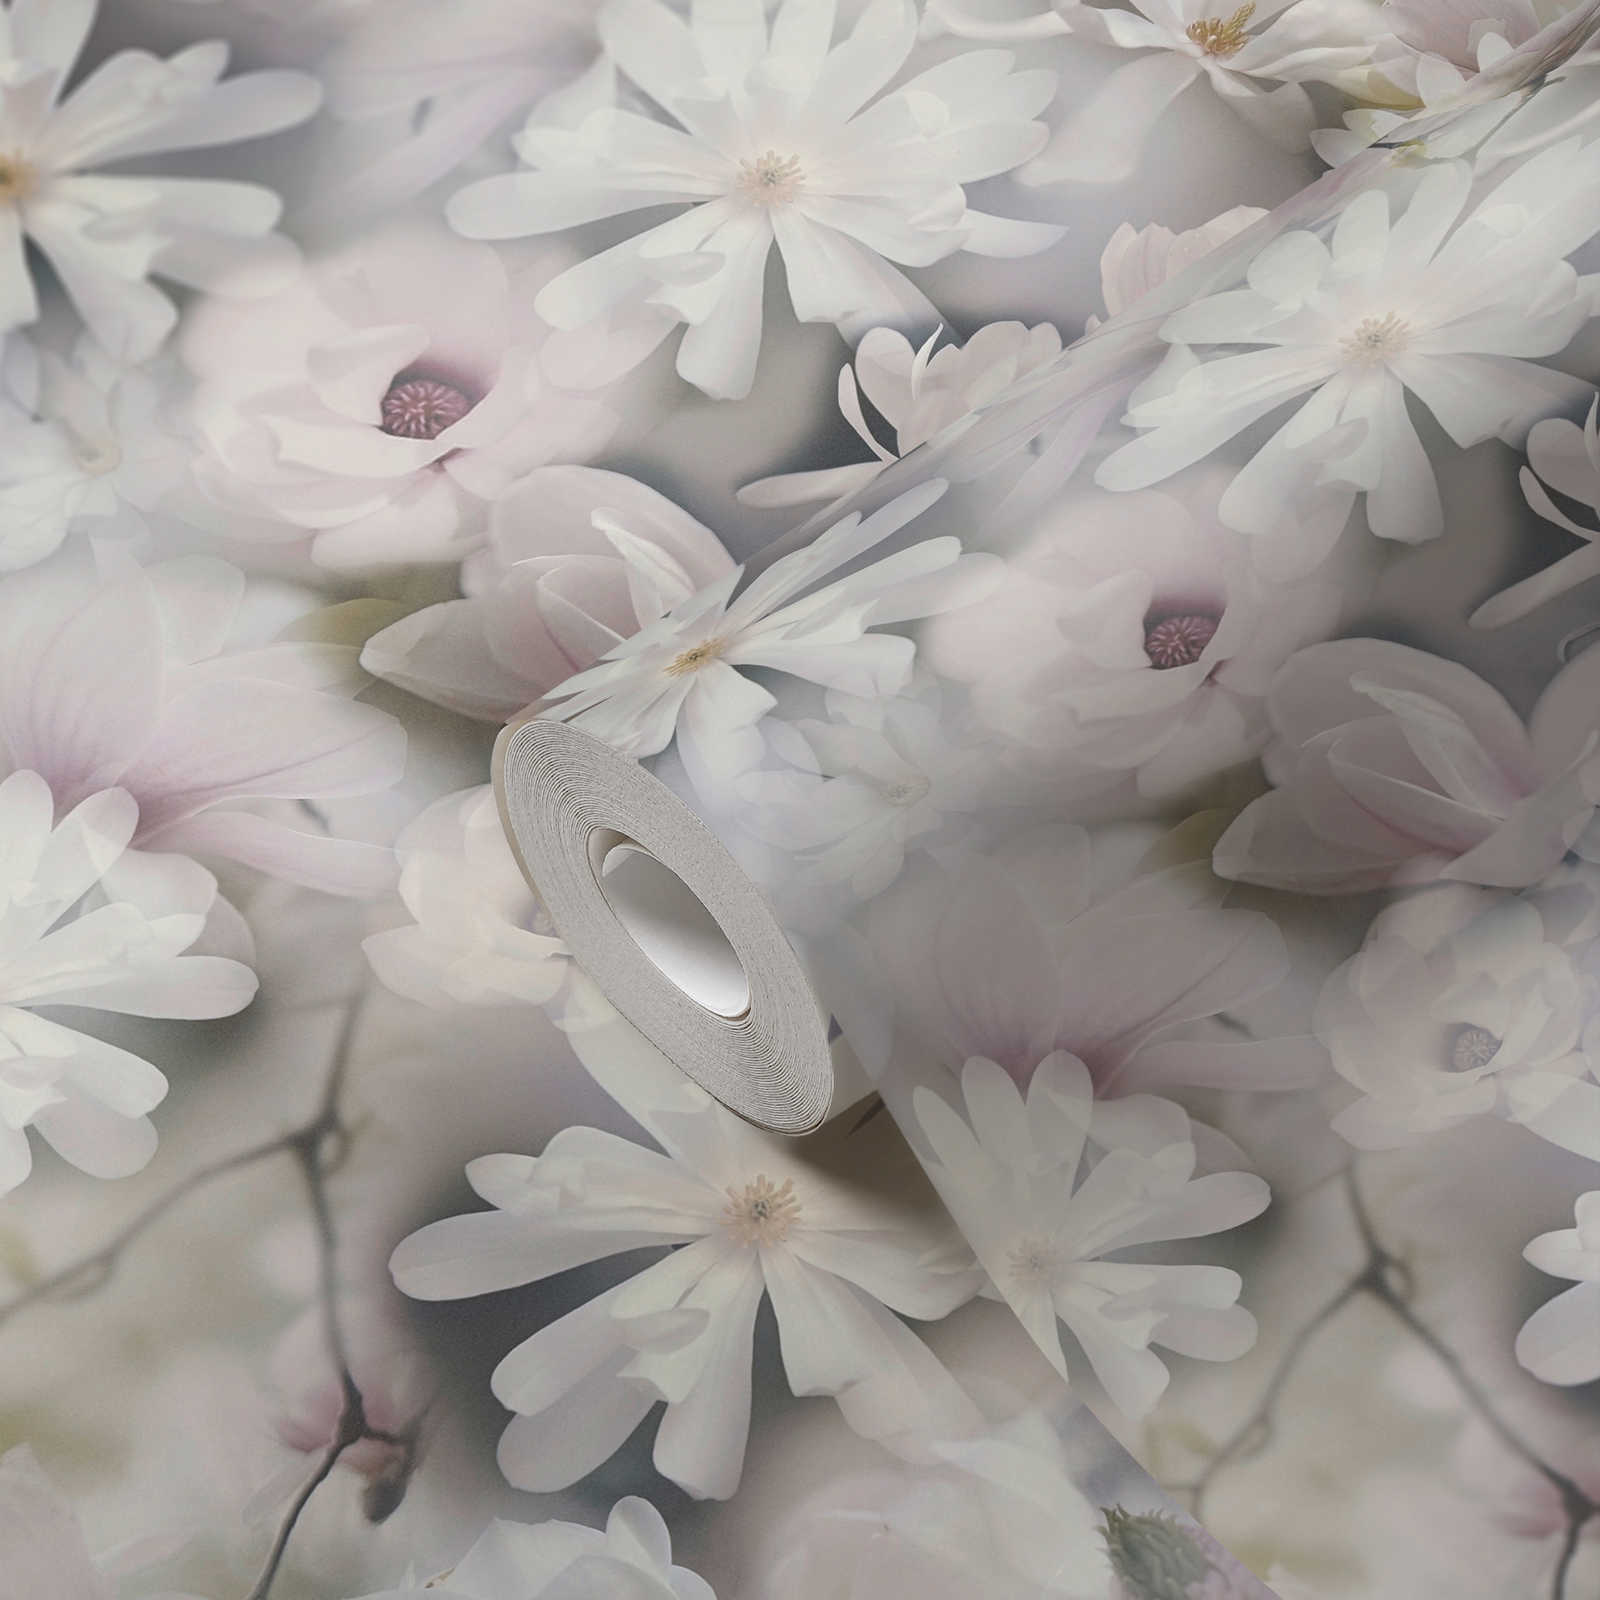             Collage di fiori su carta da parati in colori chiari - grigio, bianco
        